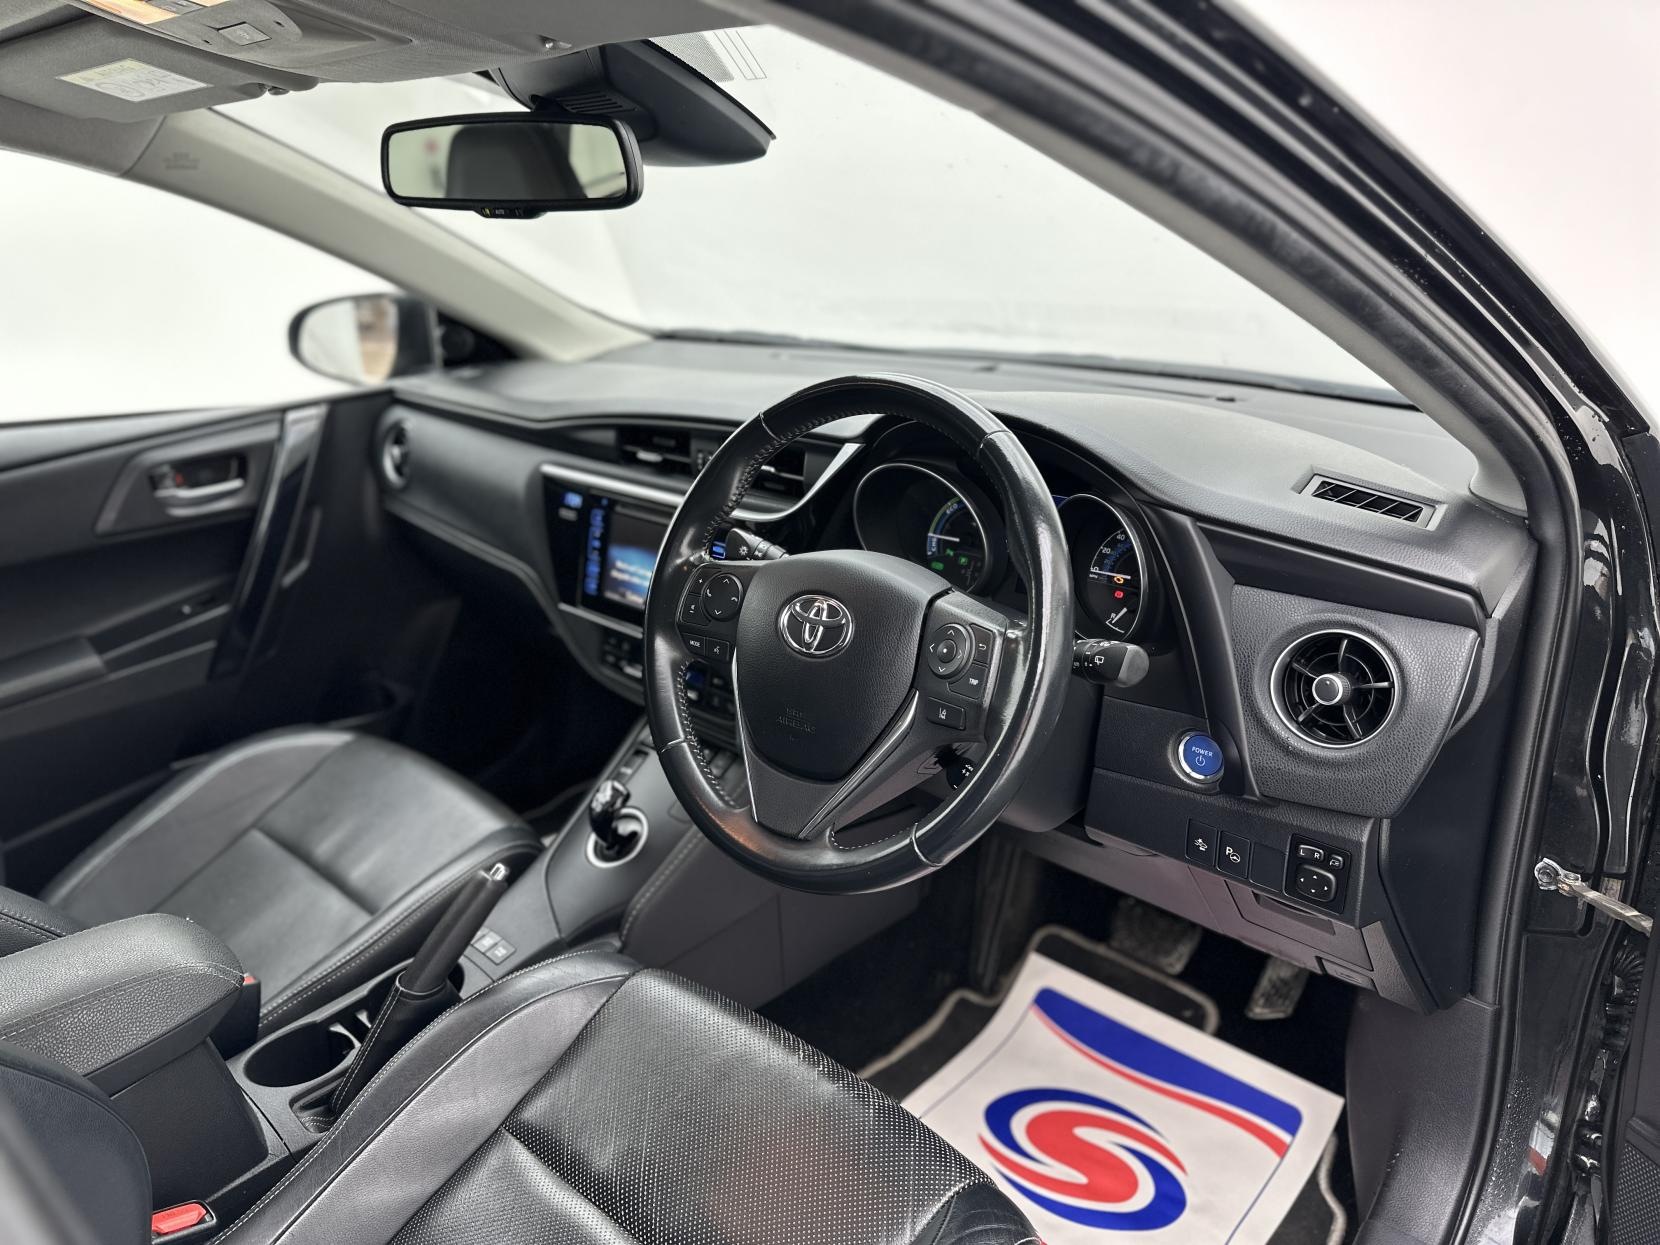 Toyota Auris 1.8 VVT-h Excel Touring Sports CVT Euro 6 (s/s) 5dr